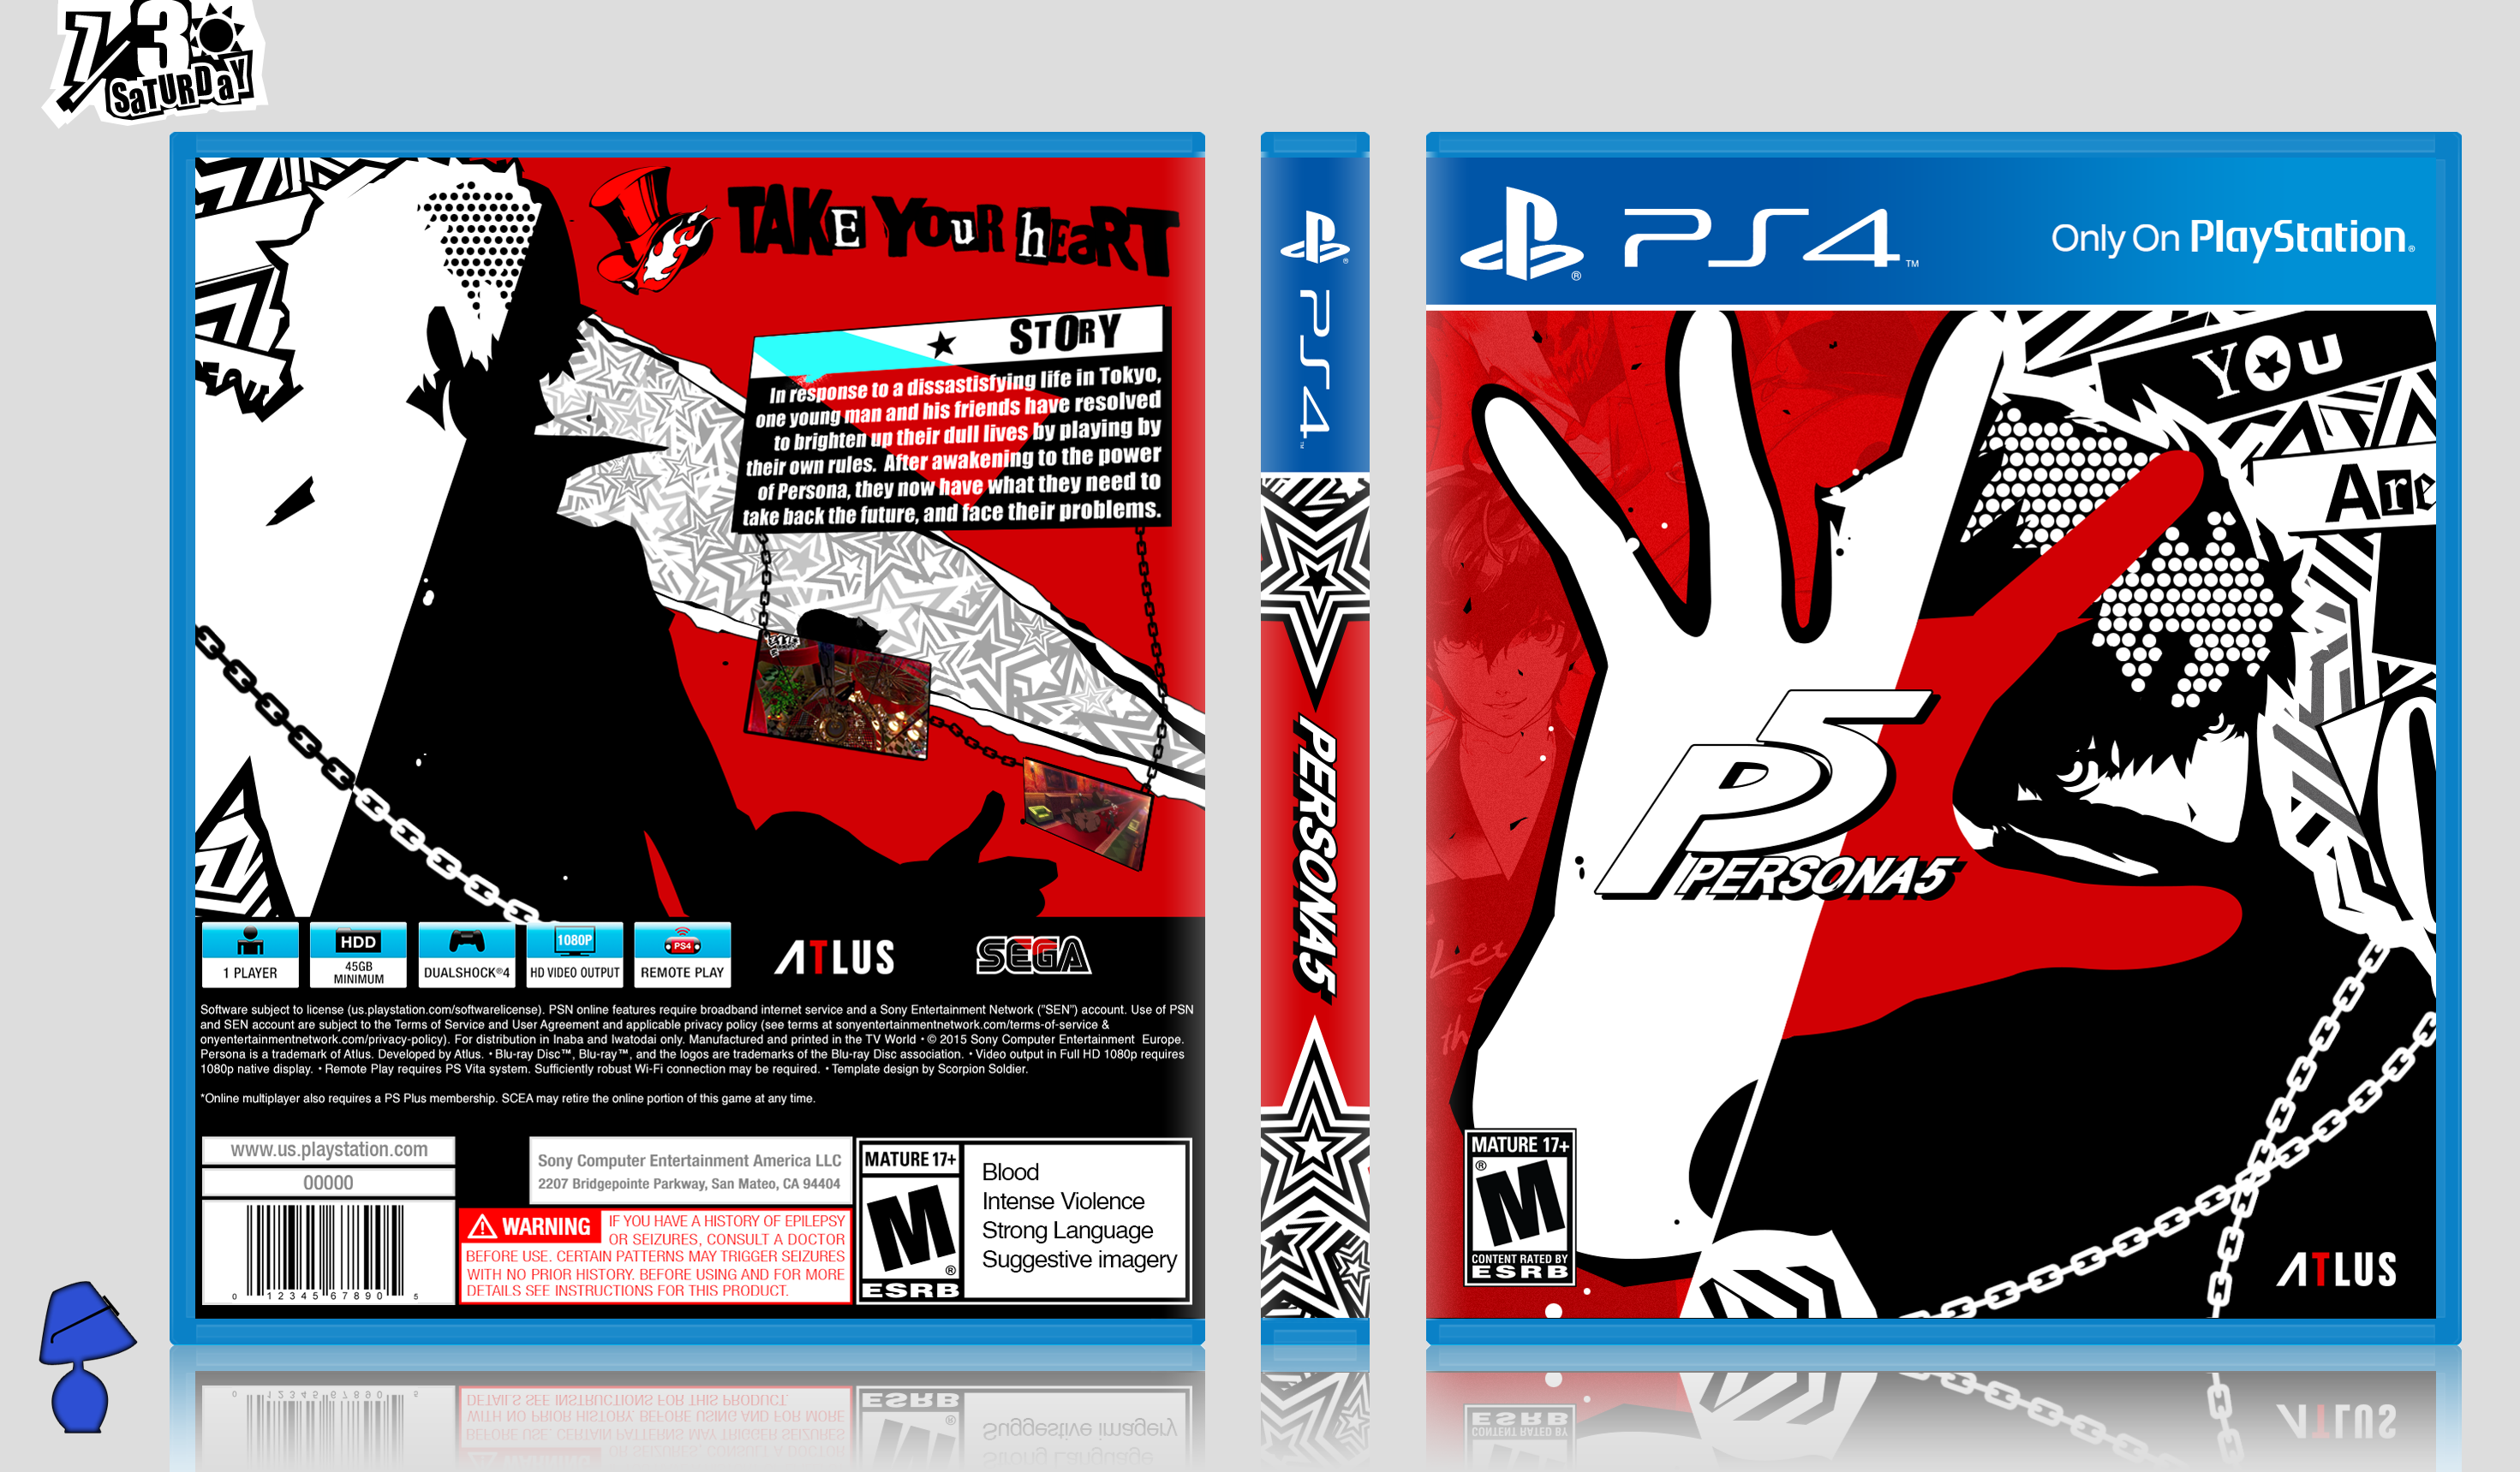 Persona 5 box art cover. 